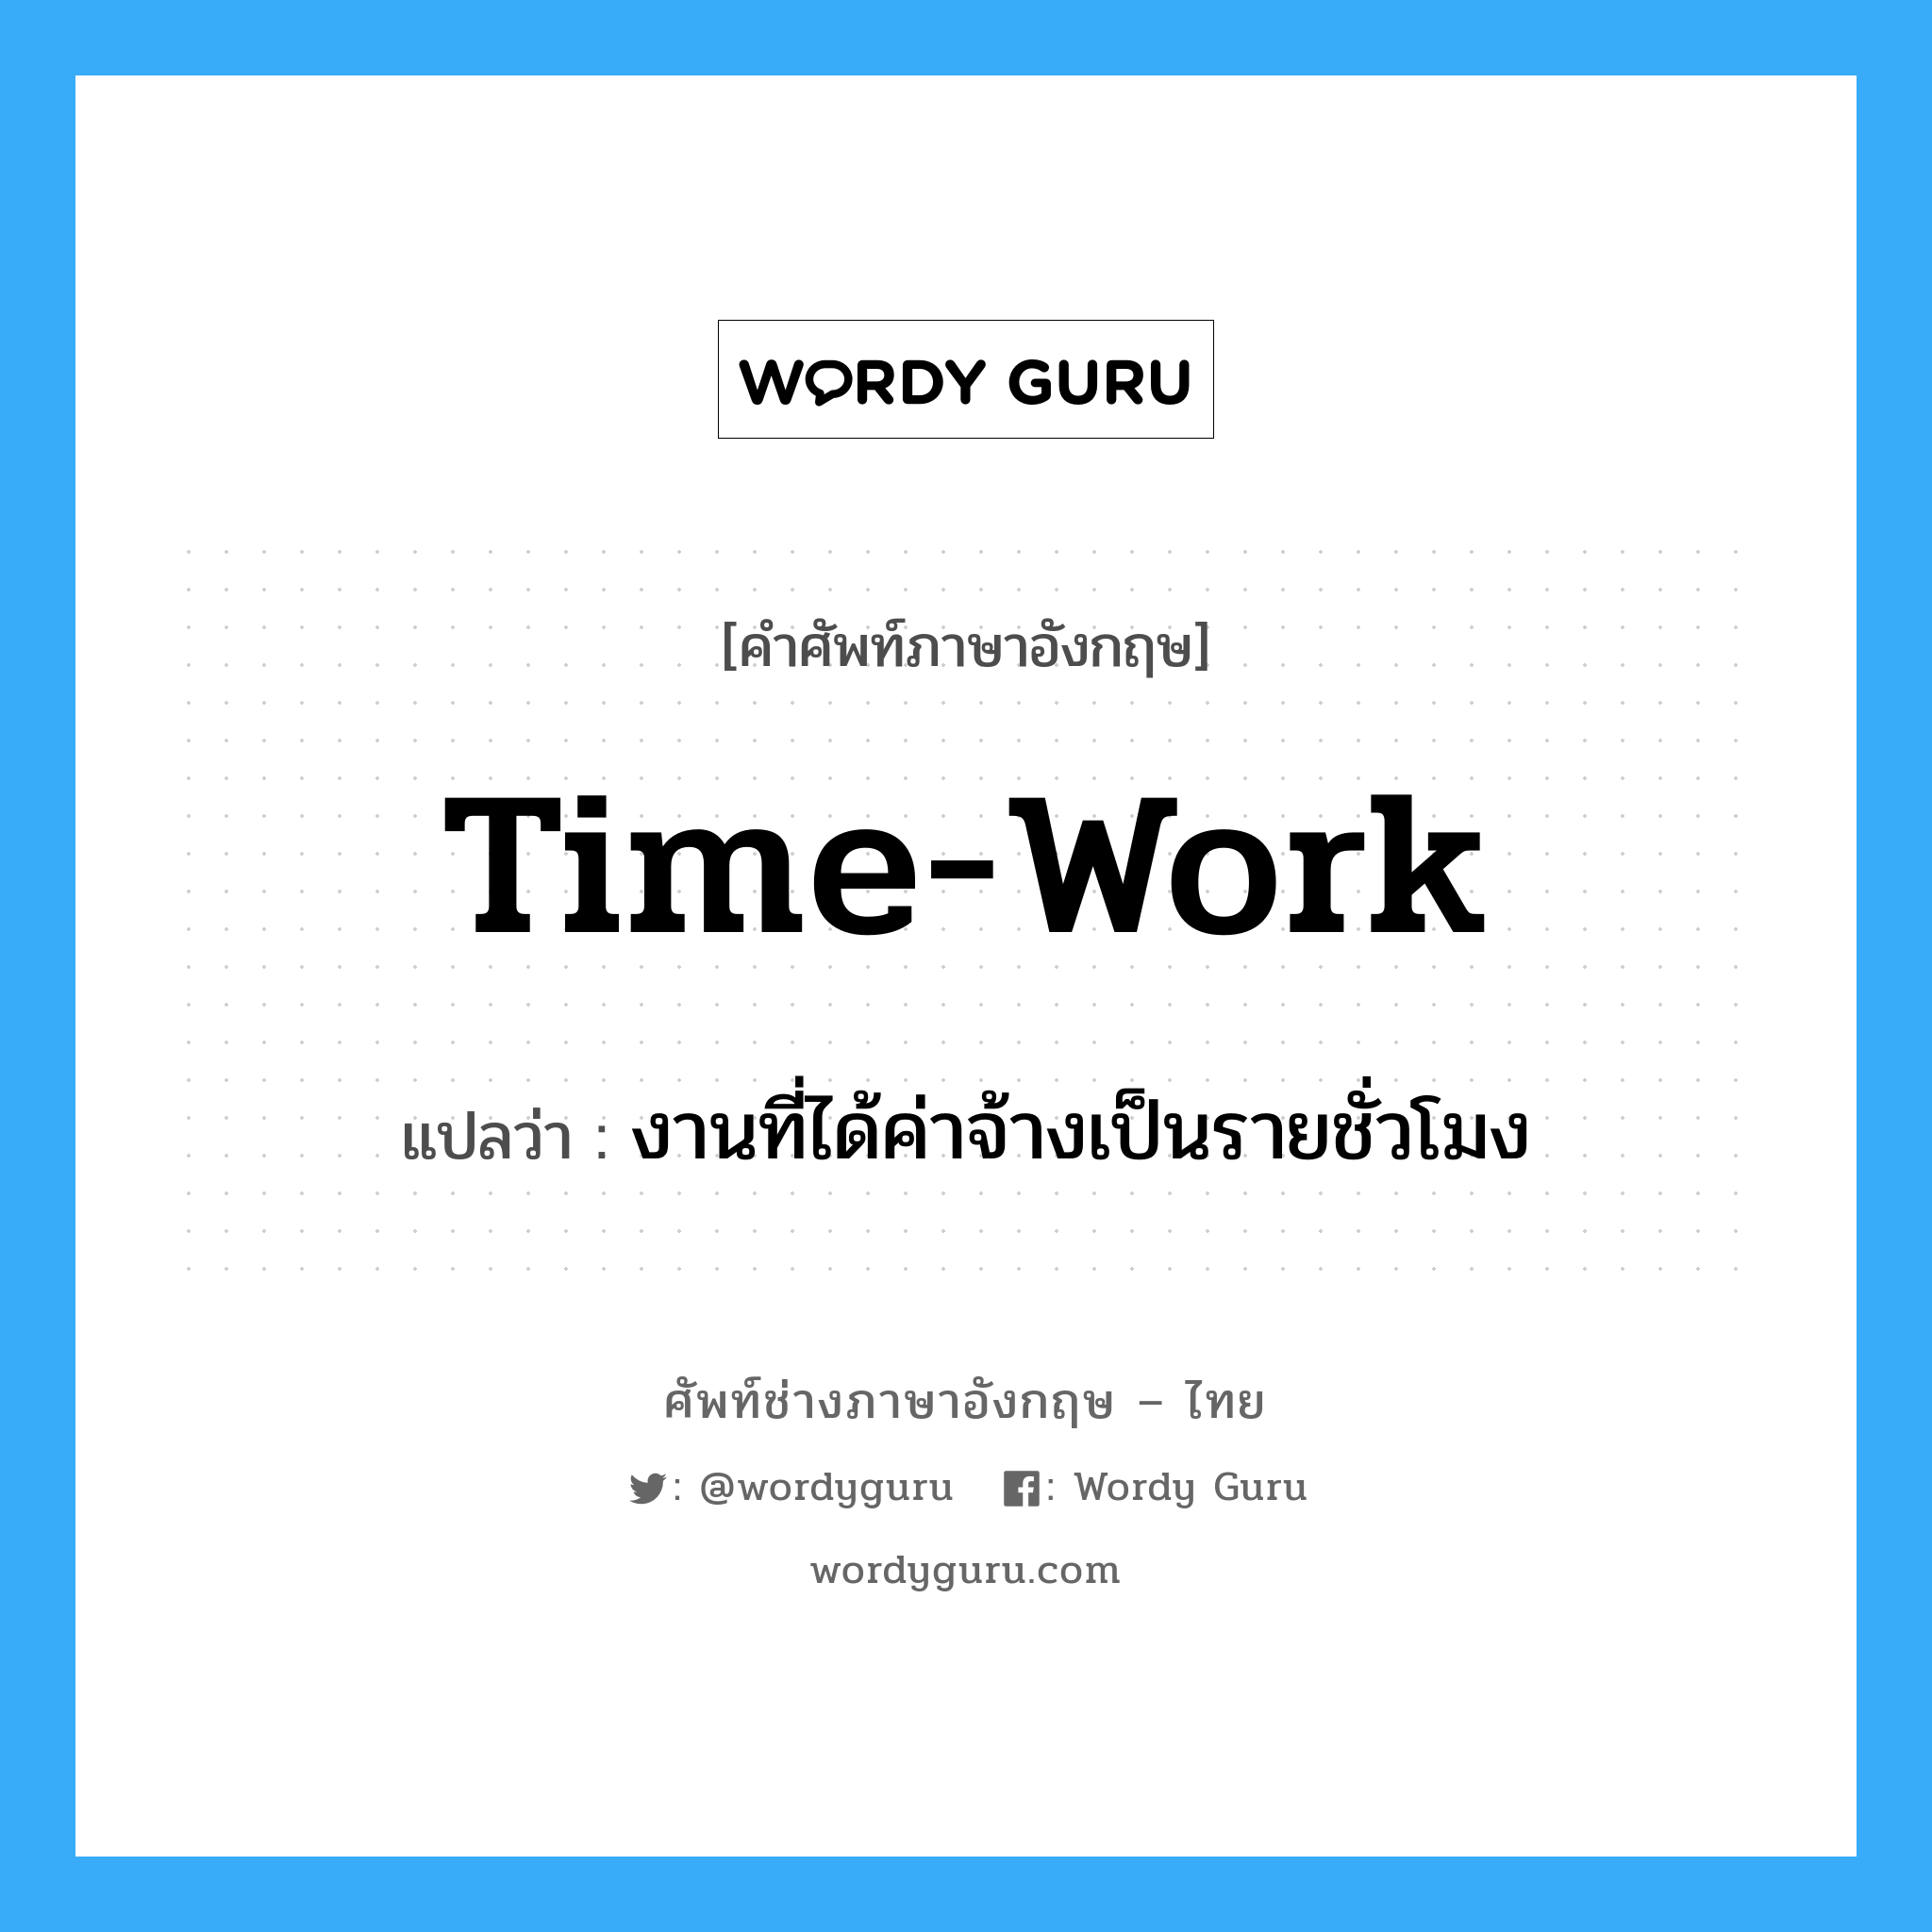 งานที่ได้ค่าจ้างเป็นรายชั่วโมง ภาษาอังกฤษ?, คำศัพท์ช่างภาษาอังกฤษ - ไทย งานที่ได้ค่าจ้างเป็นรายชั่วโมง คำศัพท์ภาษาอังกฤษ งานที่ได้ค่าจ้างเป็นรายชั่วโมง แปลว่า time-work